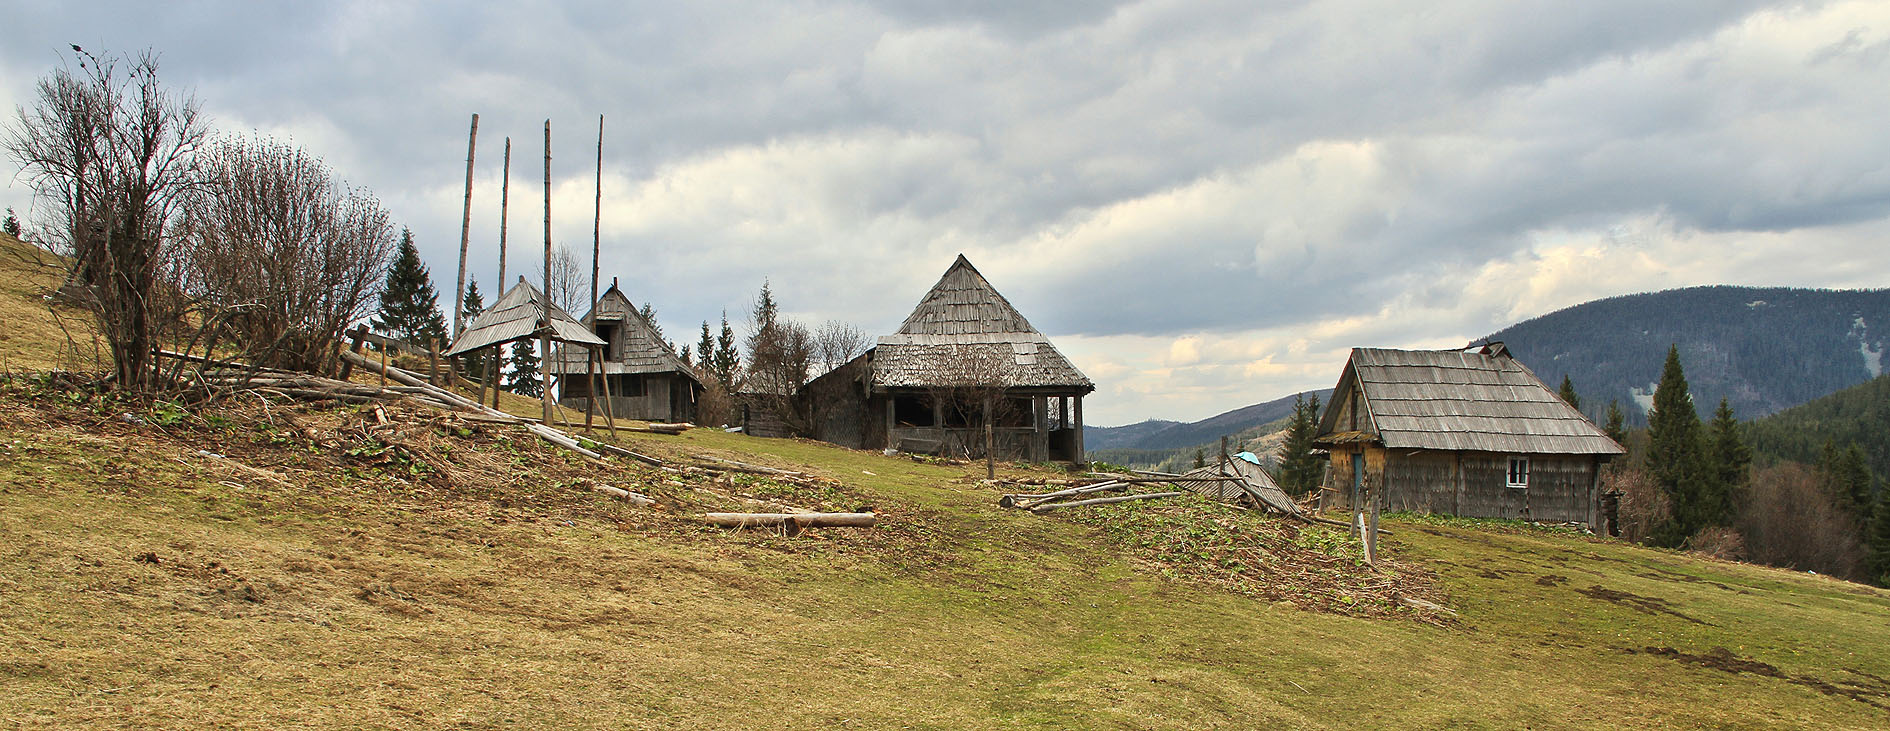 Pastevecká osada nad Siněvírským jezerem